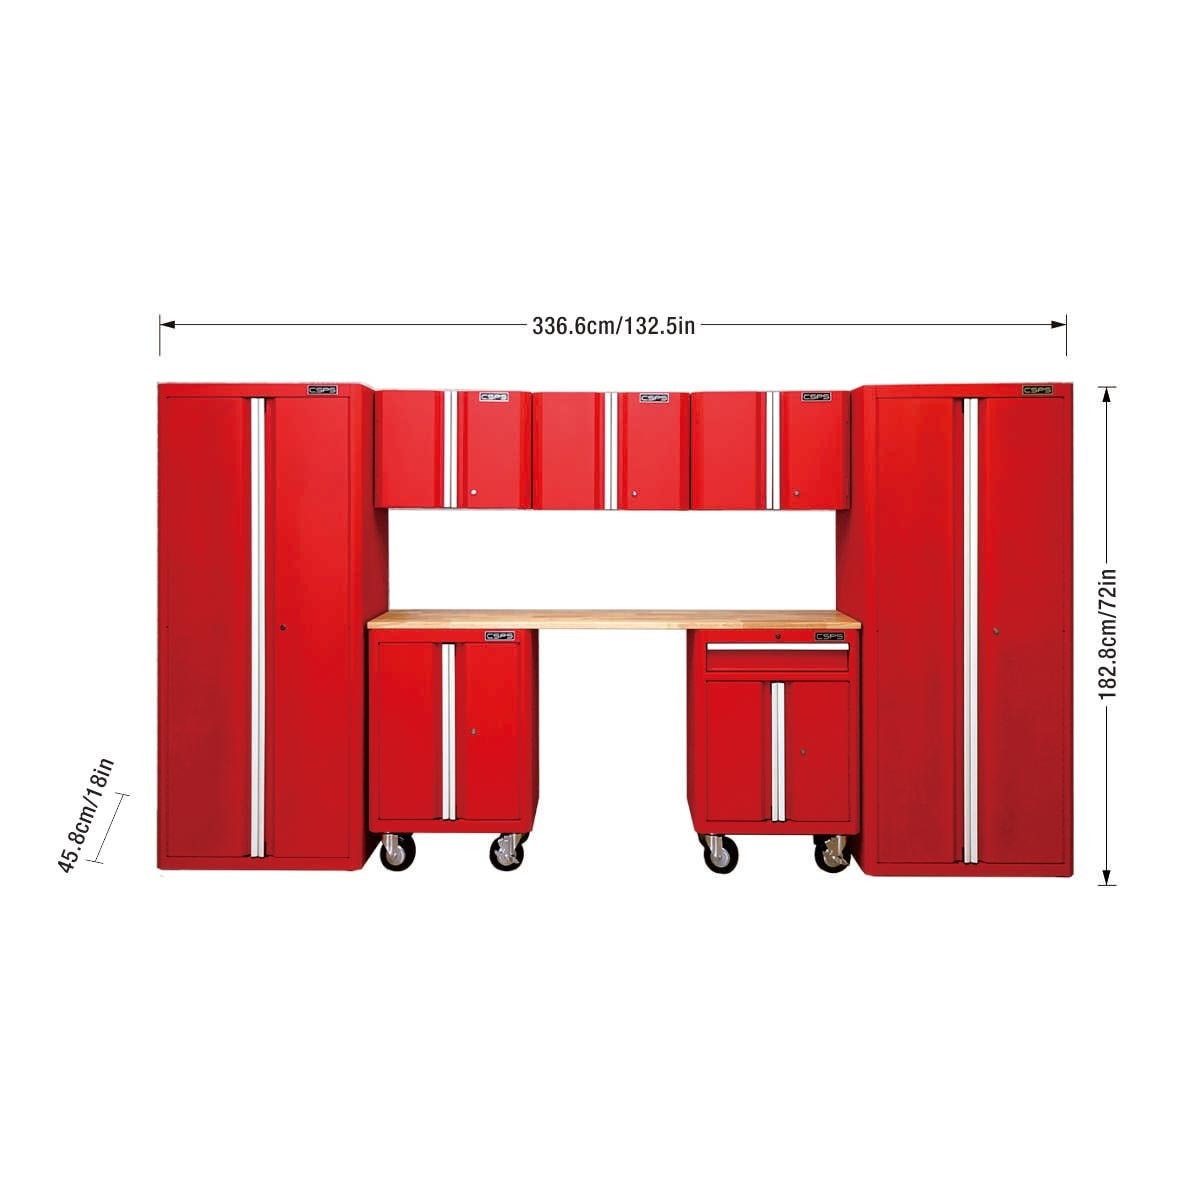 CSPS 系統櫃8件組 紅砂，整體美感佳，有效規劃收納空間，好收納、易找物、風格大器，門內附層板，可依收納需求調整高度，運用廣泛，居家或商業皆可使用。